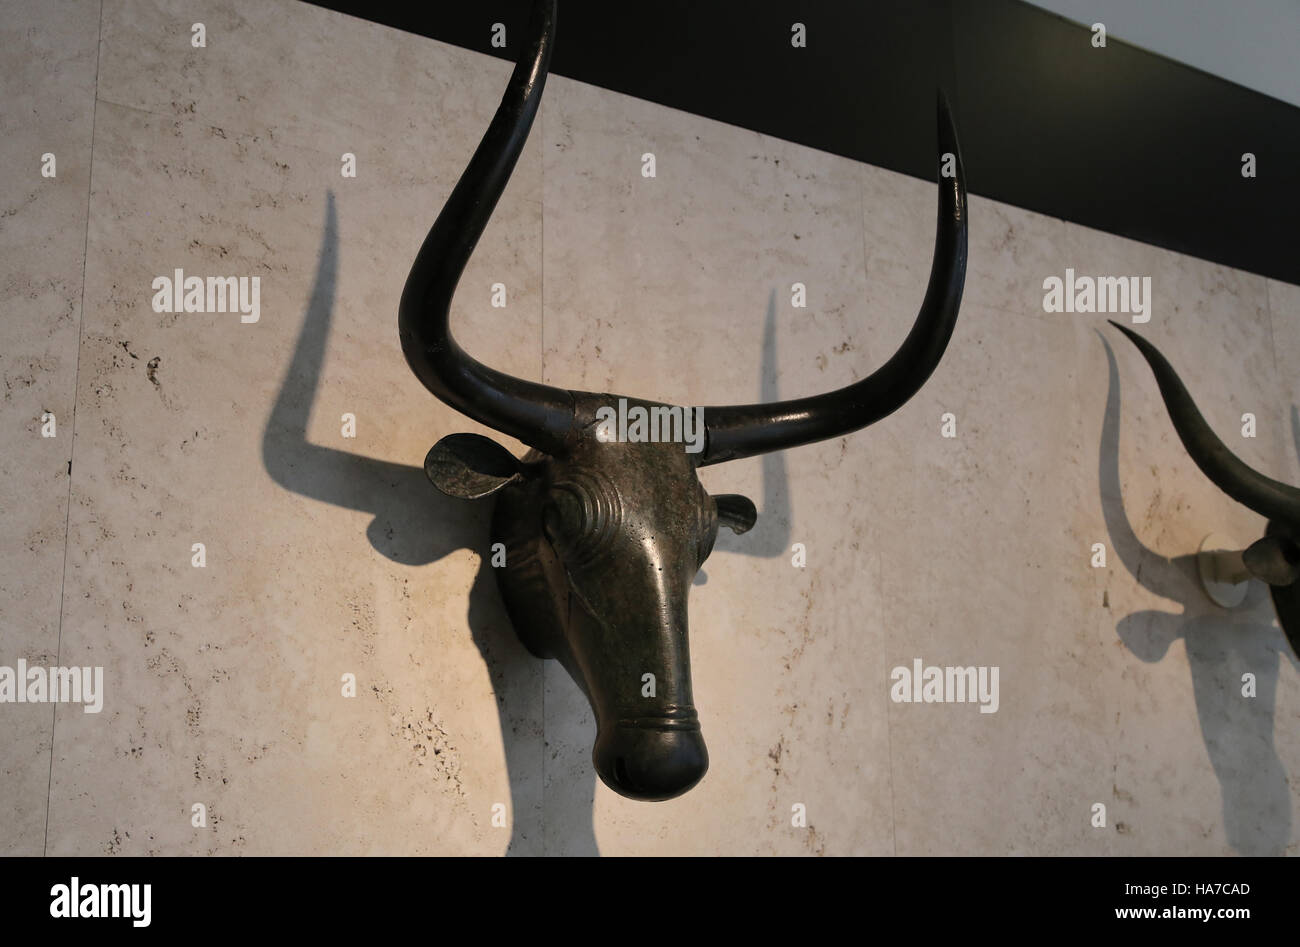 Stiere von Costitx. 500 V. CHR. - 200 BC. Eisenzeit. Material: Bronze. Schrein von Predio de Son Corro, Costitx, Mallorca, Spanien. Nationales Archäologisches Museum, Stockfoto